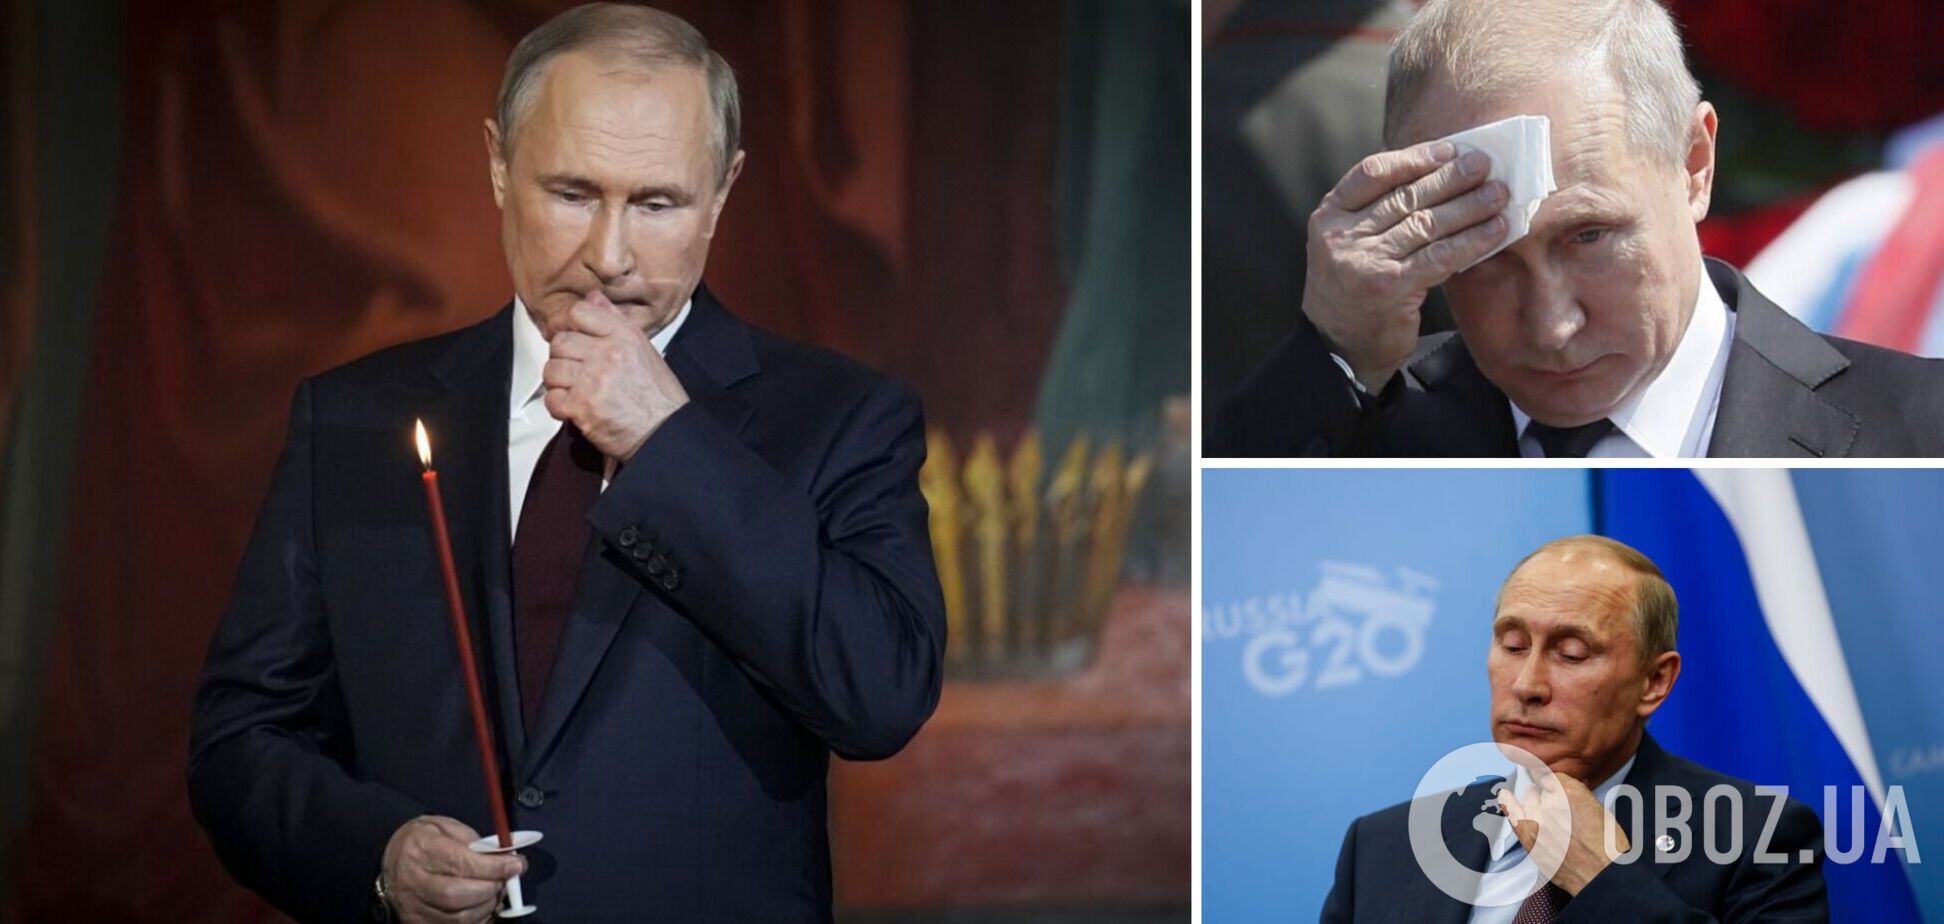 Путин изменился внешне, вызвав новые разговоры о болезни: что не так с лицом президента РФ